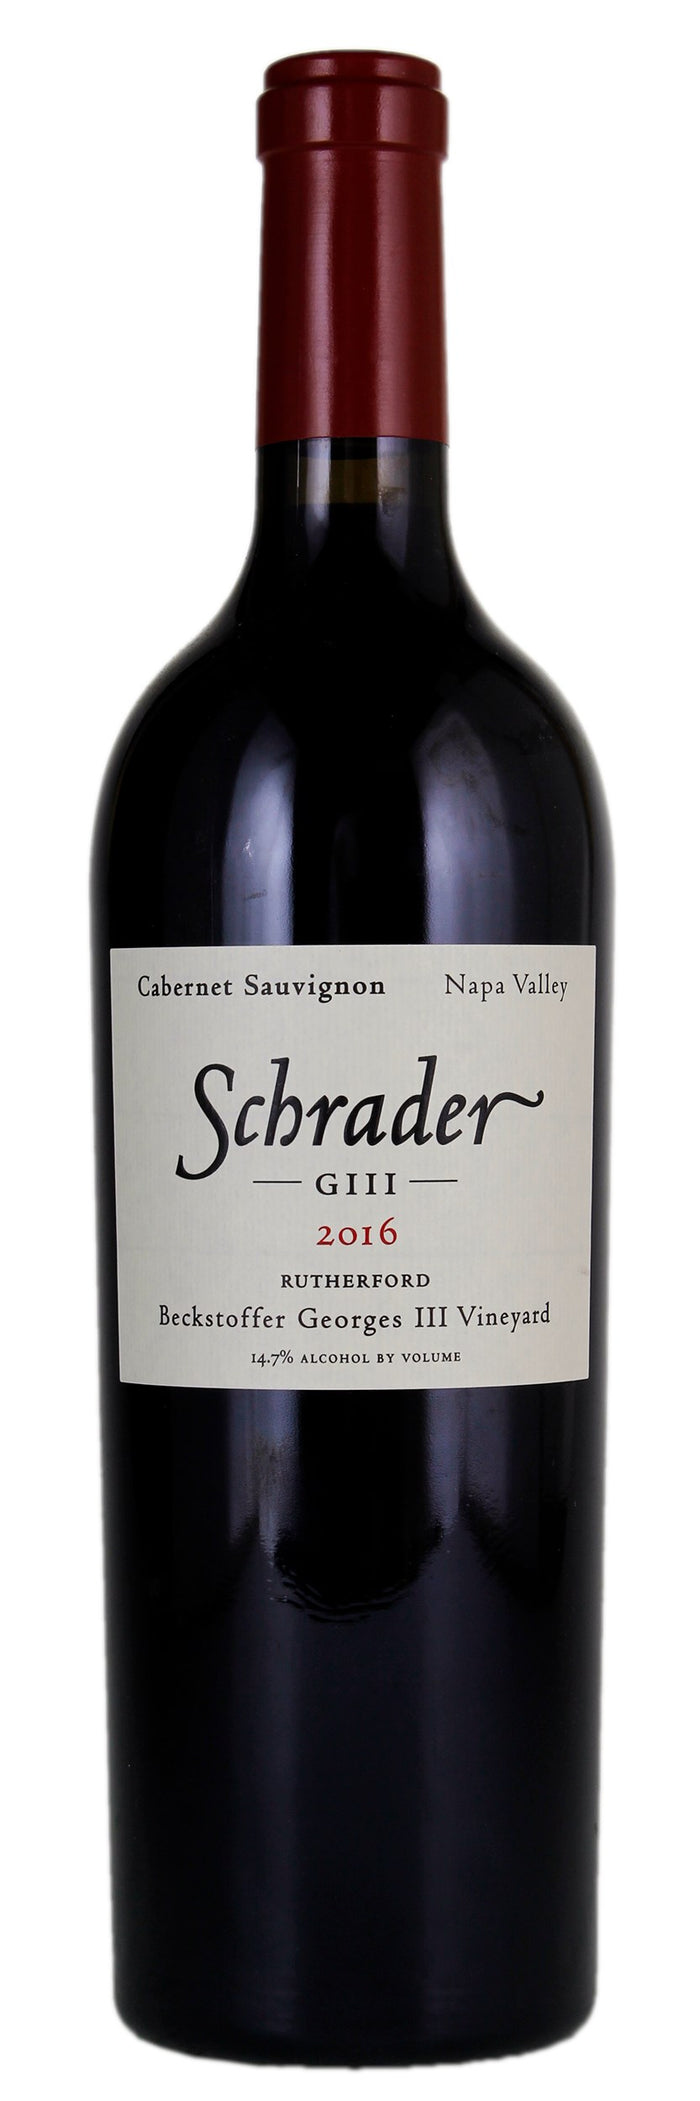 2016 | Schrader | GIII Beckstoffer Georges III Vineyard